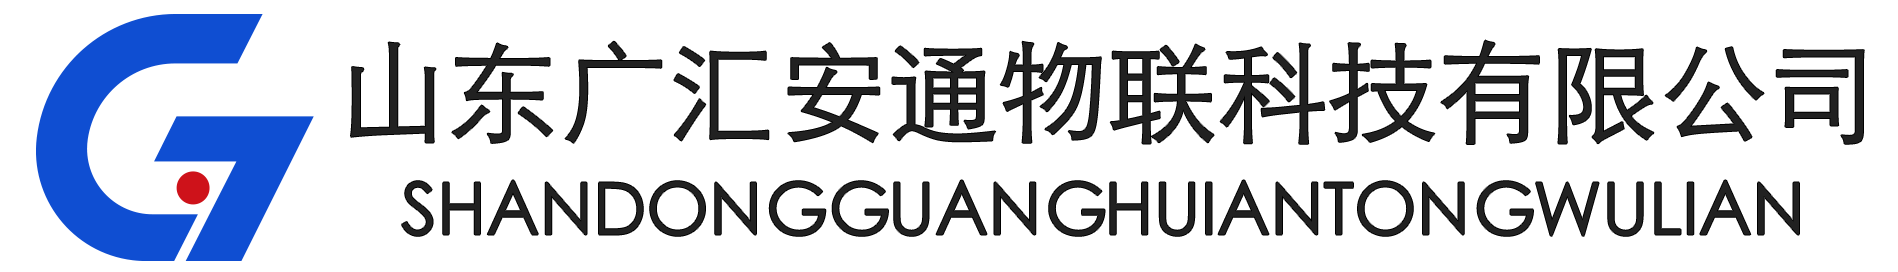 广安车联与G7成立合资公司，加速推进商用车物联网进程-企业新闻